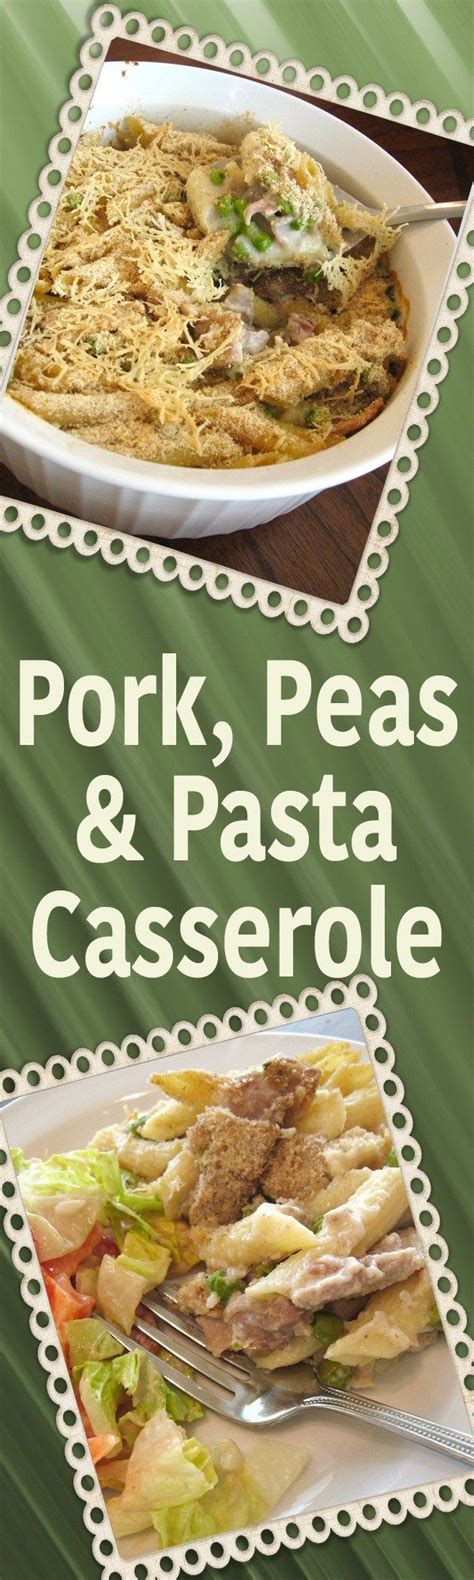 You can find our favorite pork loin recipe here. Pork, Peas & Pasta Casserole | Leftover pork recipes, Pork ...